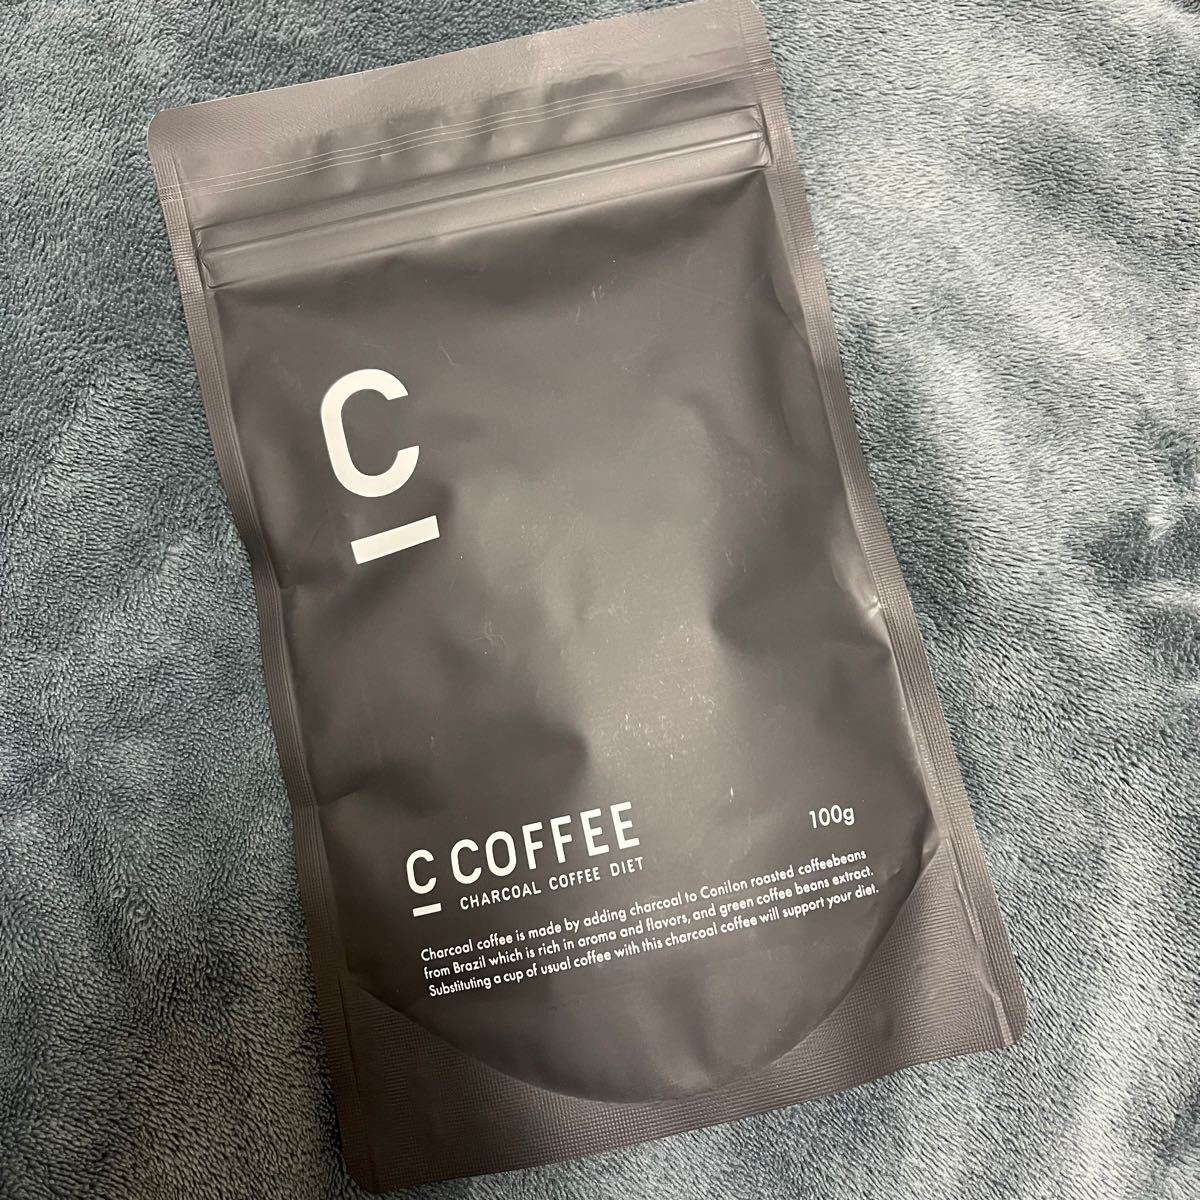 CCOFFEE シーコーヒー チャコールコーヒーダイエット